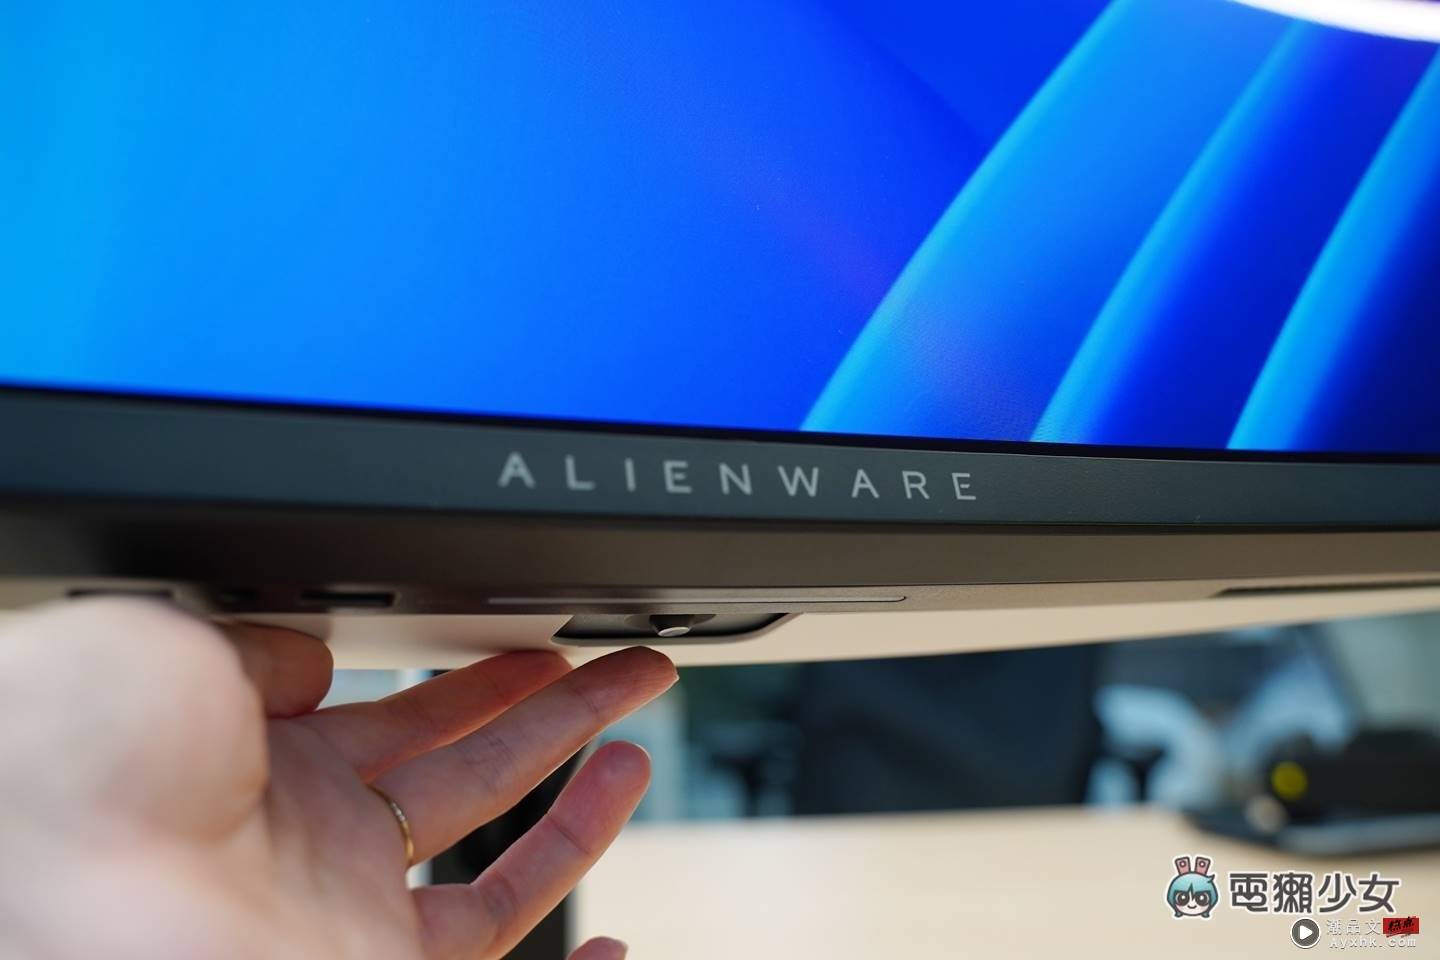 开箱｜最新 QD-OLED 技术显示器，Alienware 34 吋曲面电竞萤幕 AW3423DW 数码科技 图13张